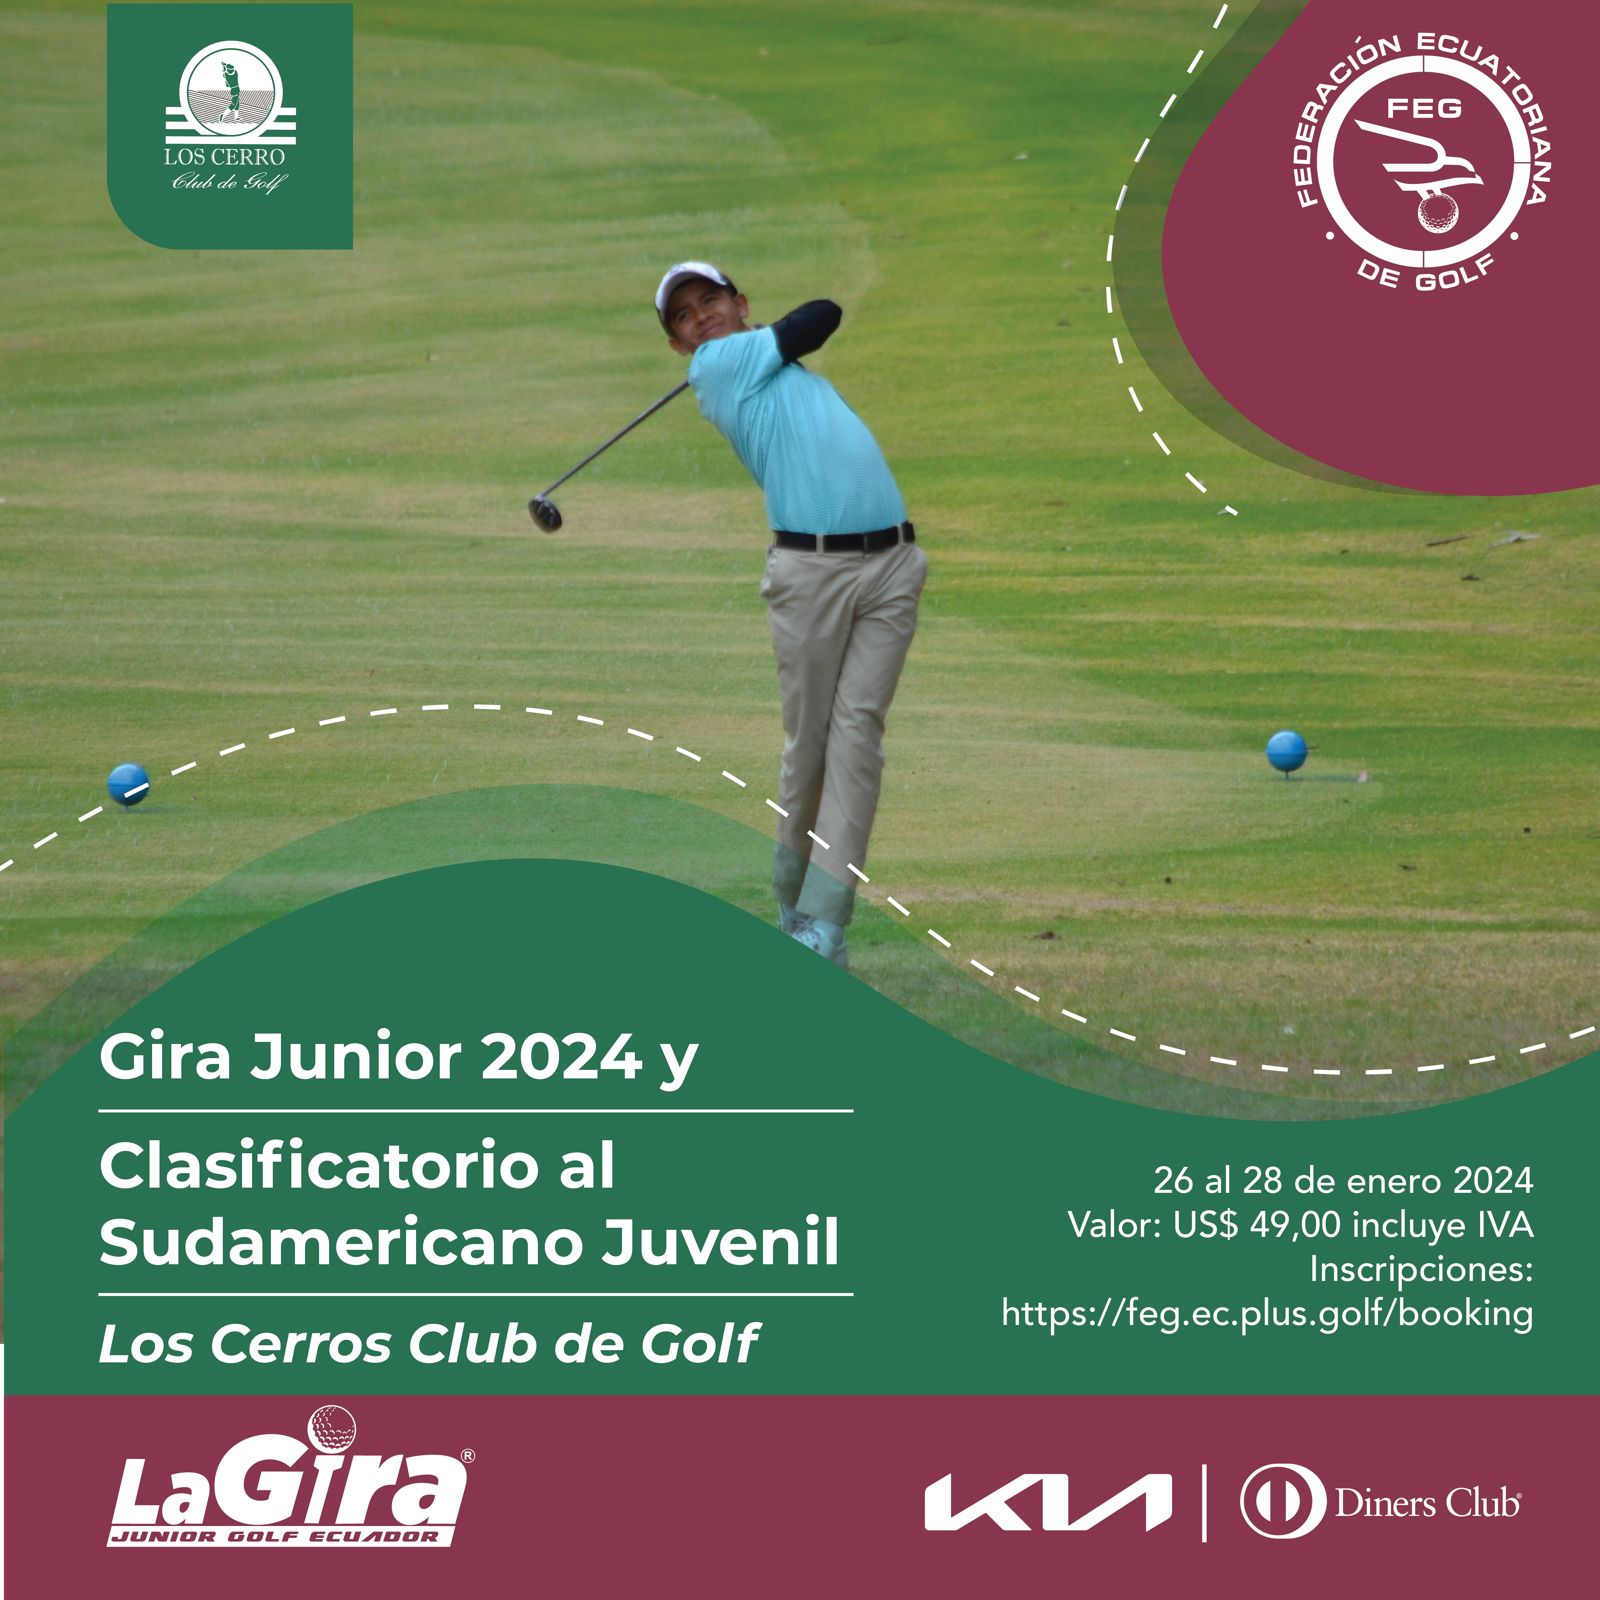 Gira Junior de Los Cerros Club de Golf y Clasificatorio al Sudamericano Juvenil 2024